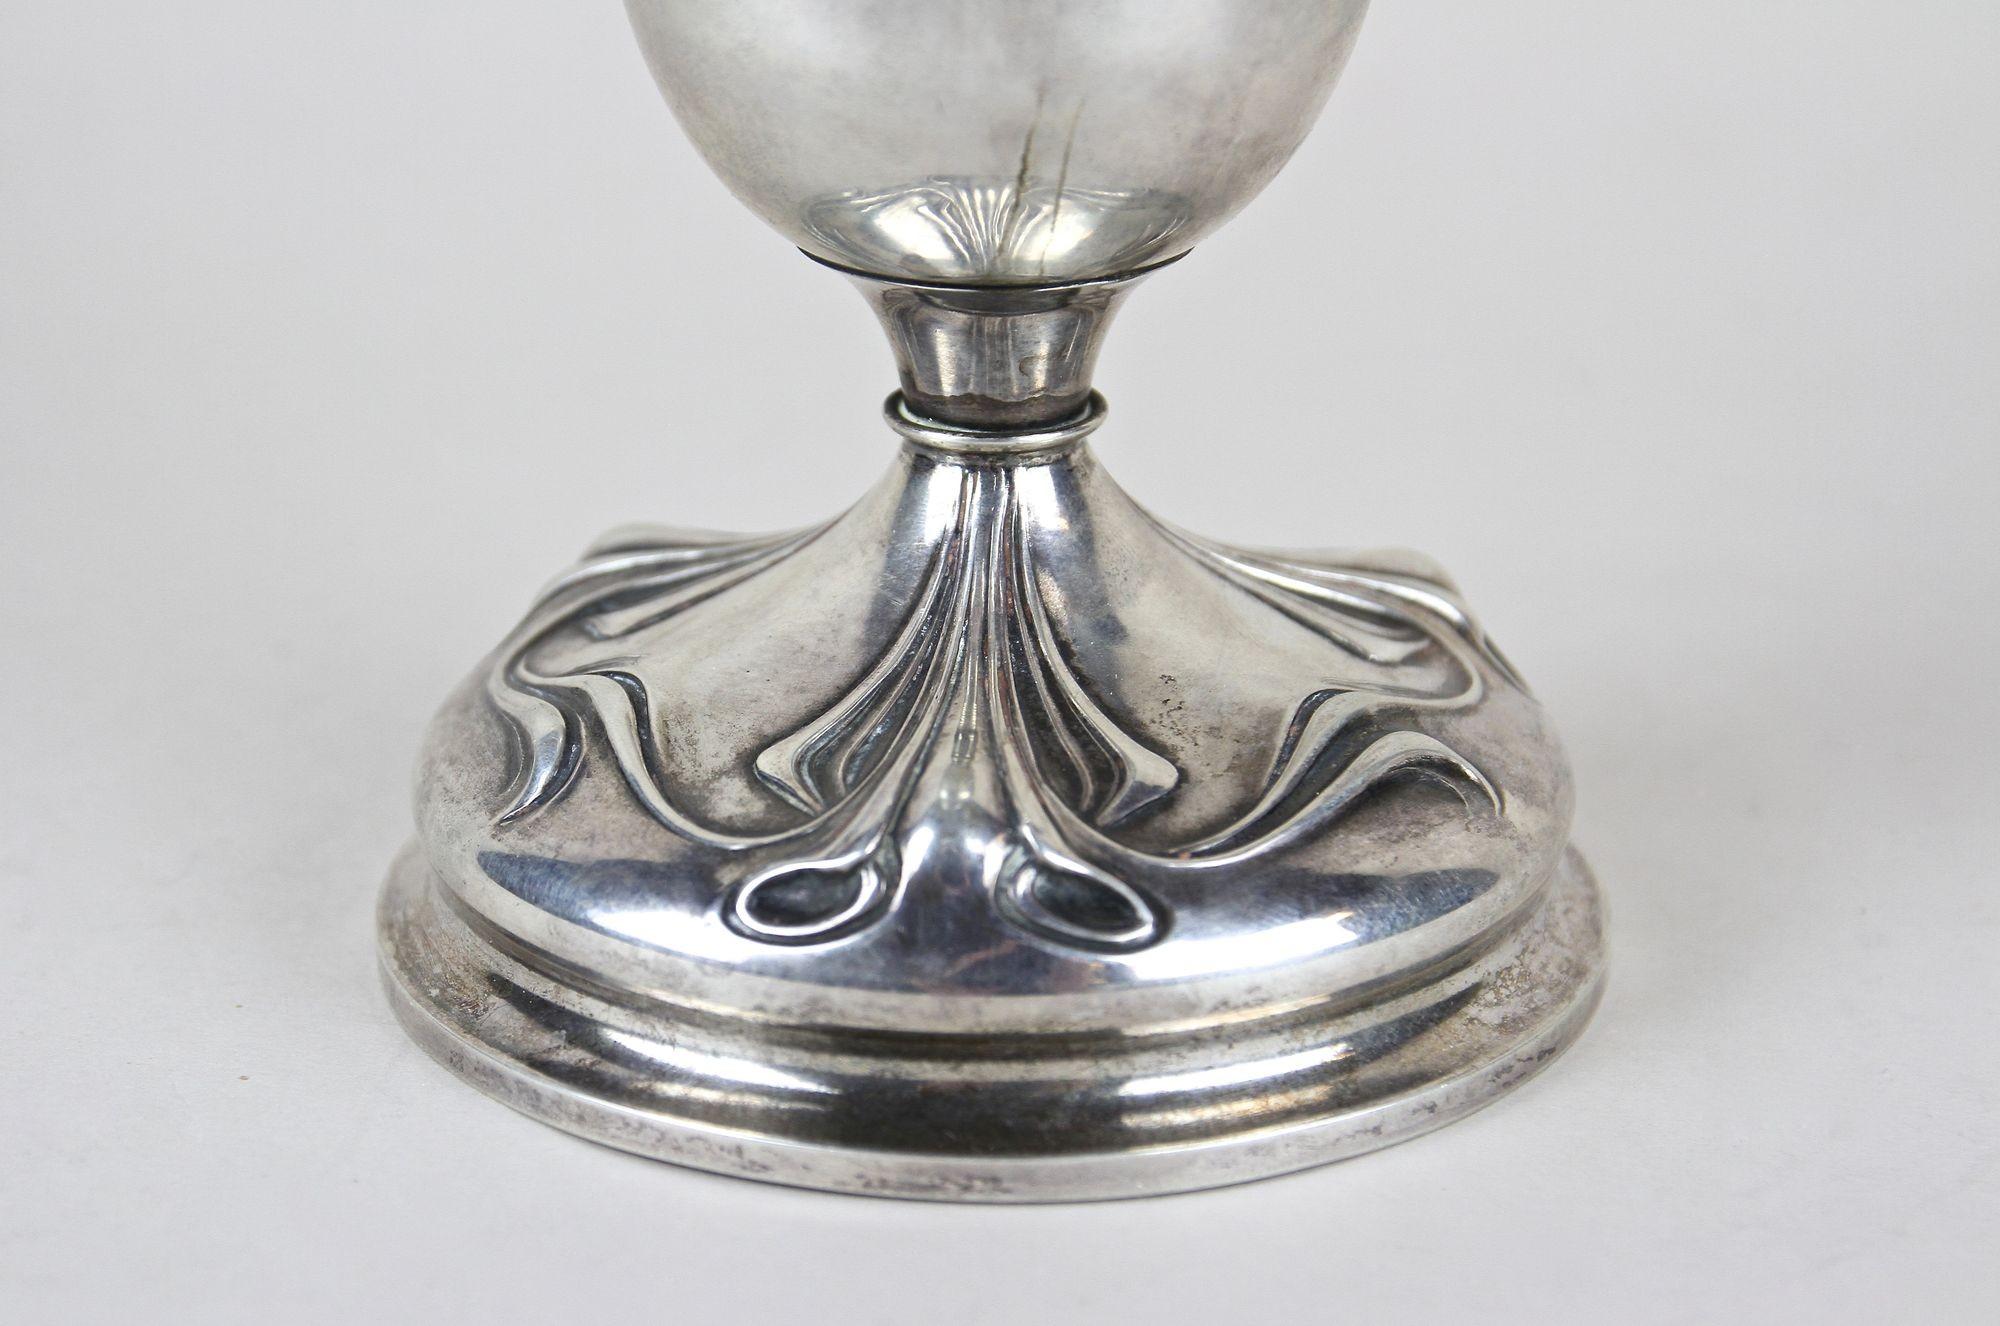 20th Century Art Nouveau Silver Amphora Vase With Lid, Austria circa 1900 For Sale 1